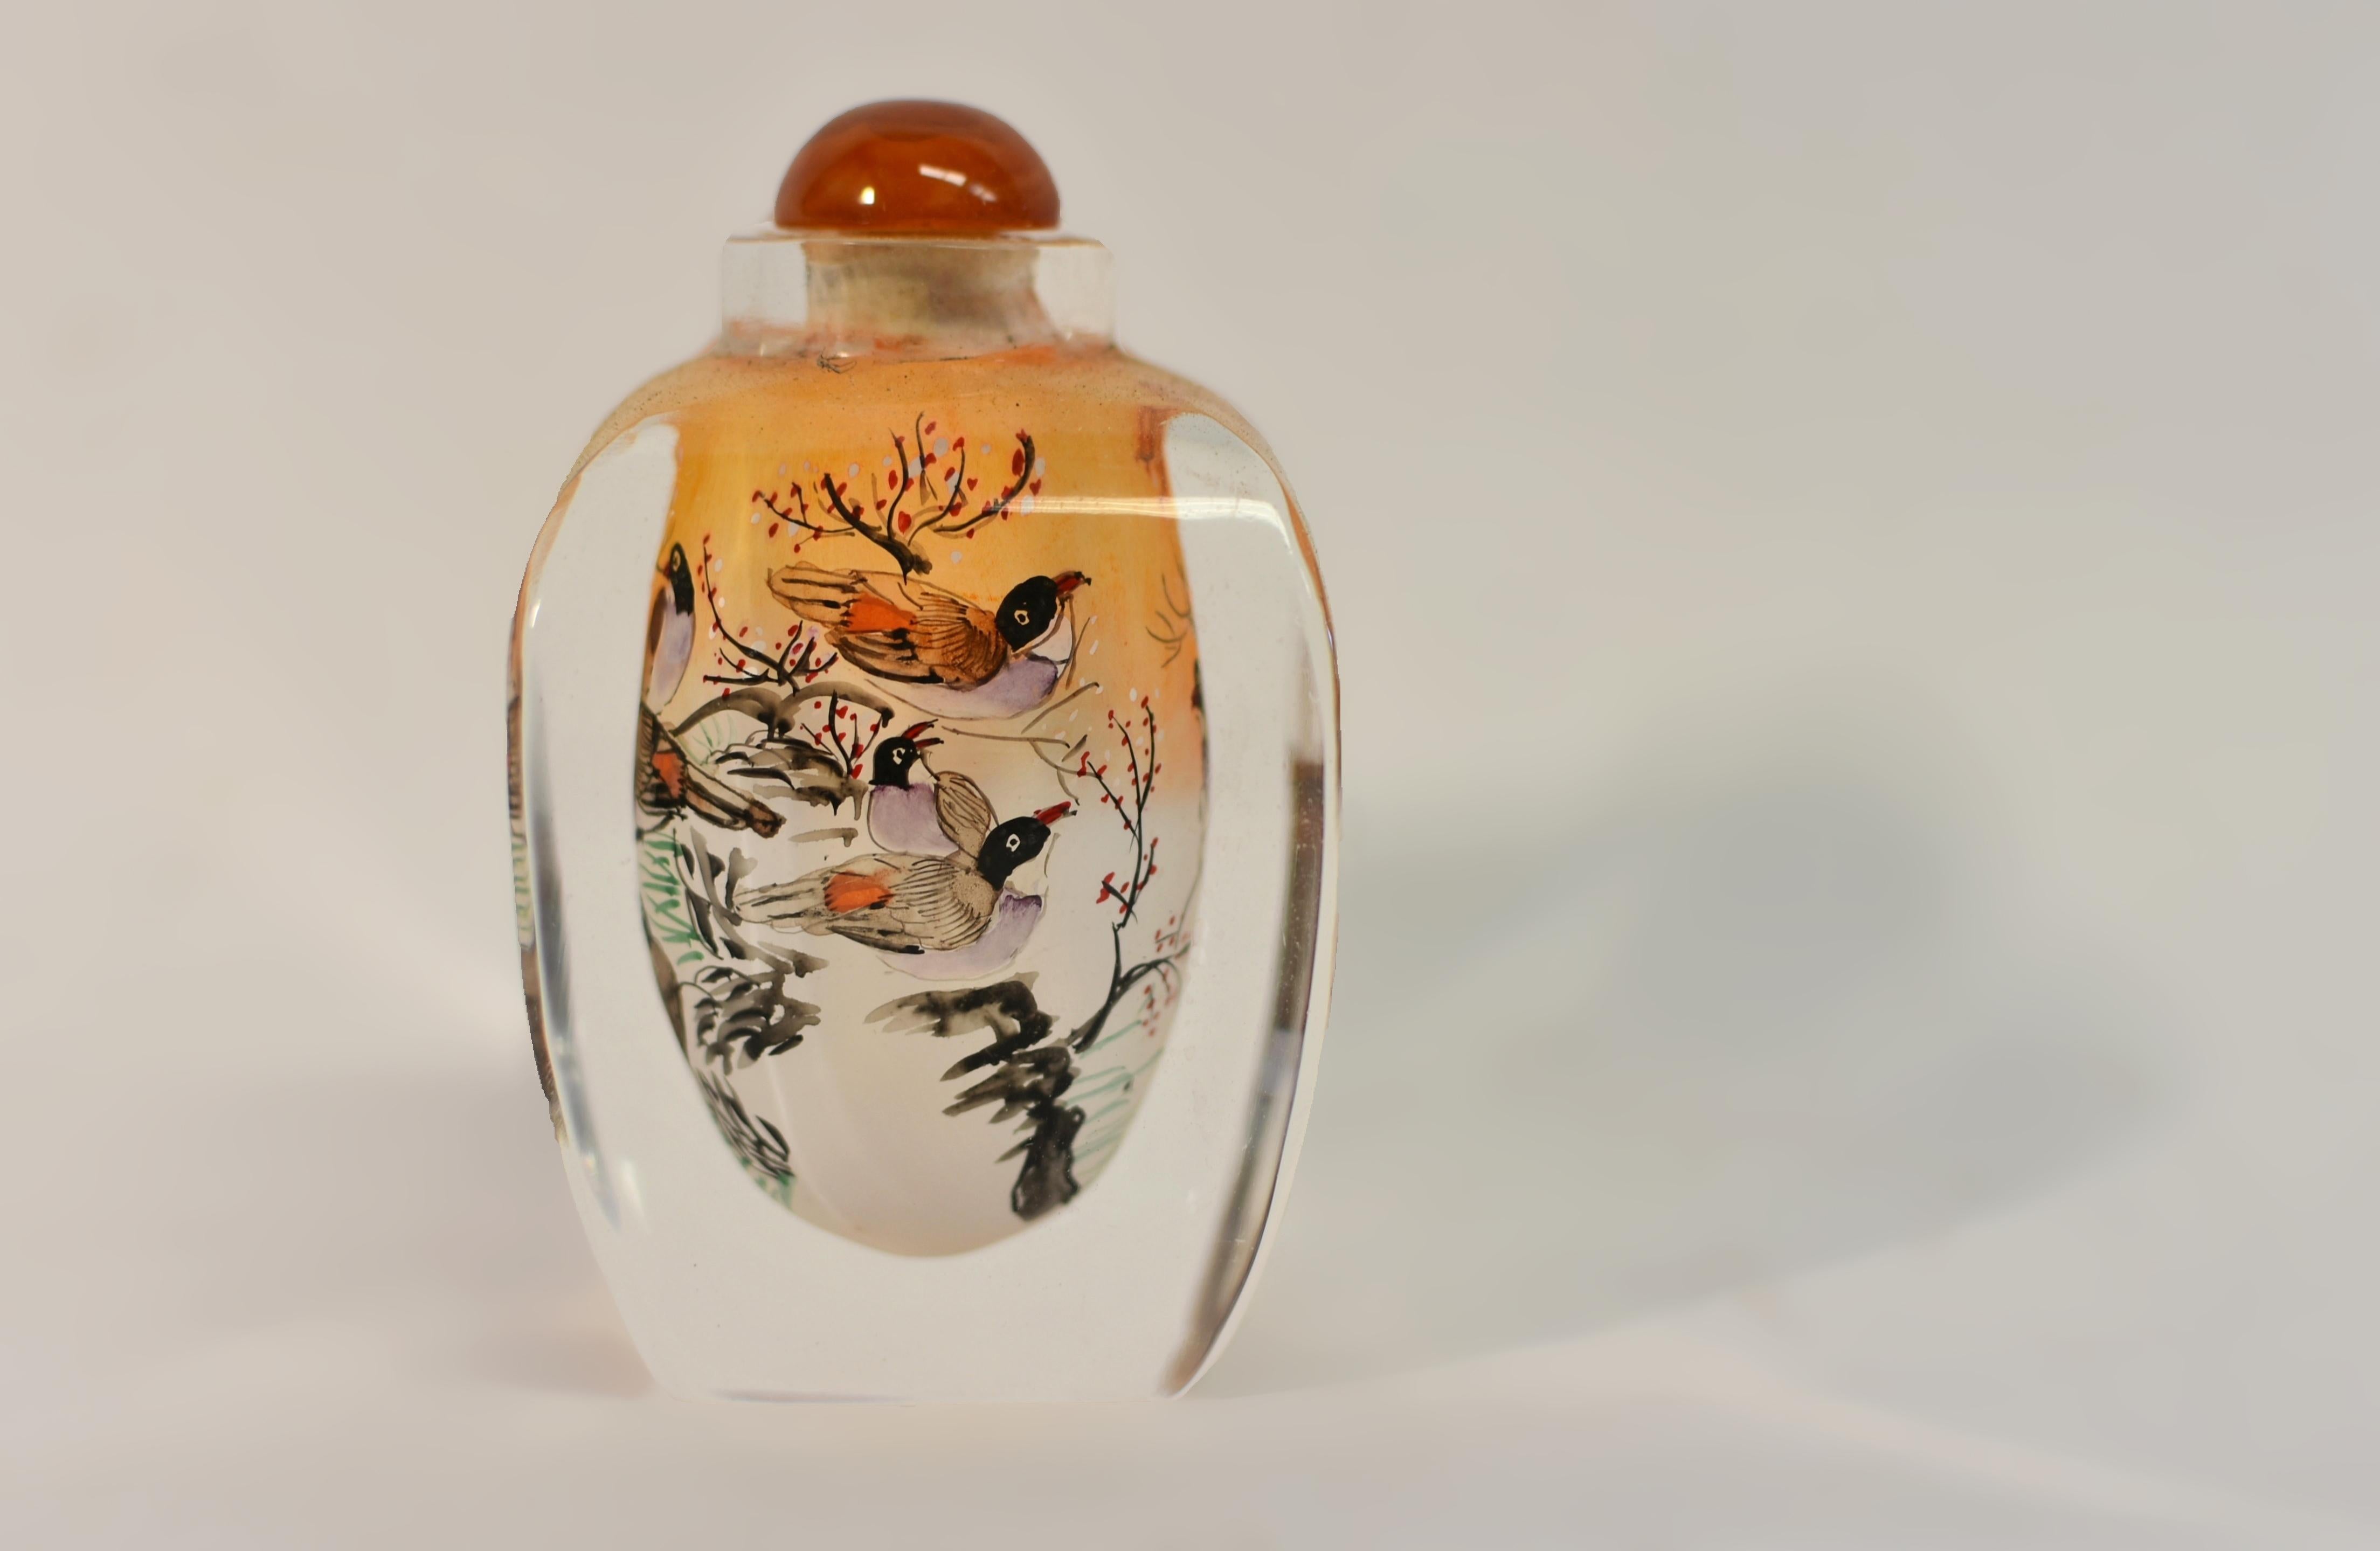 Die chinesische Eglomise-Schnupftabakflasche ist ein fesselndes Meisterwerk, das die feine Kunst der Hinterglasmalerei von innen zeigt. Die Szene zeigte eine Gruppe von Vögeln, die auf einem Pflaumenblütenbaum in einer ruhigen Schneelandschaft